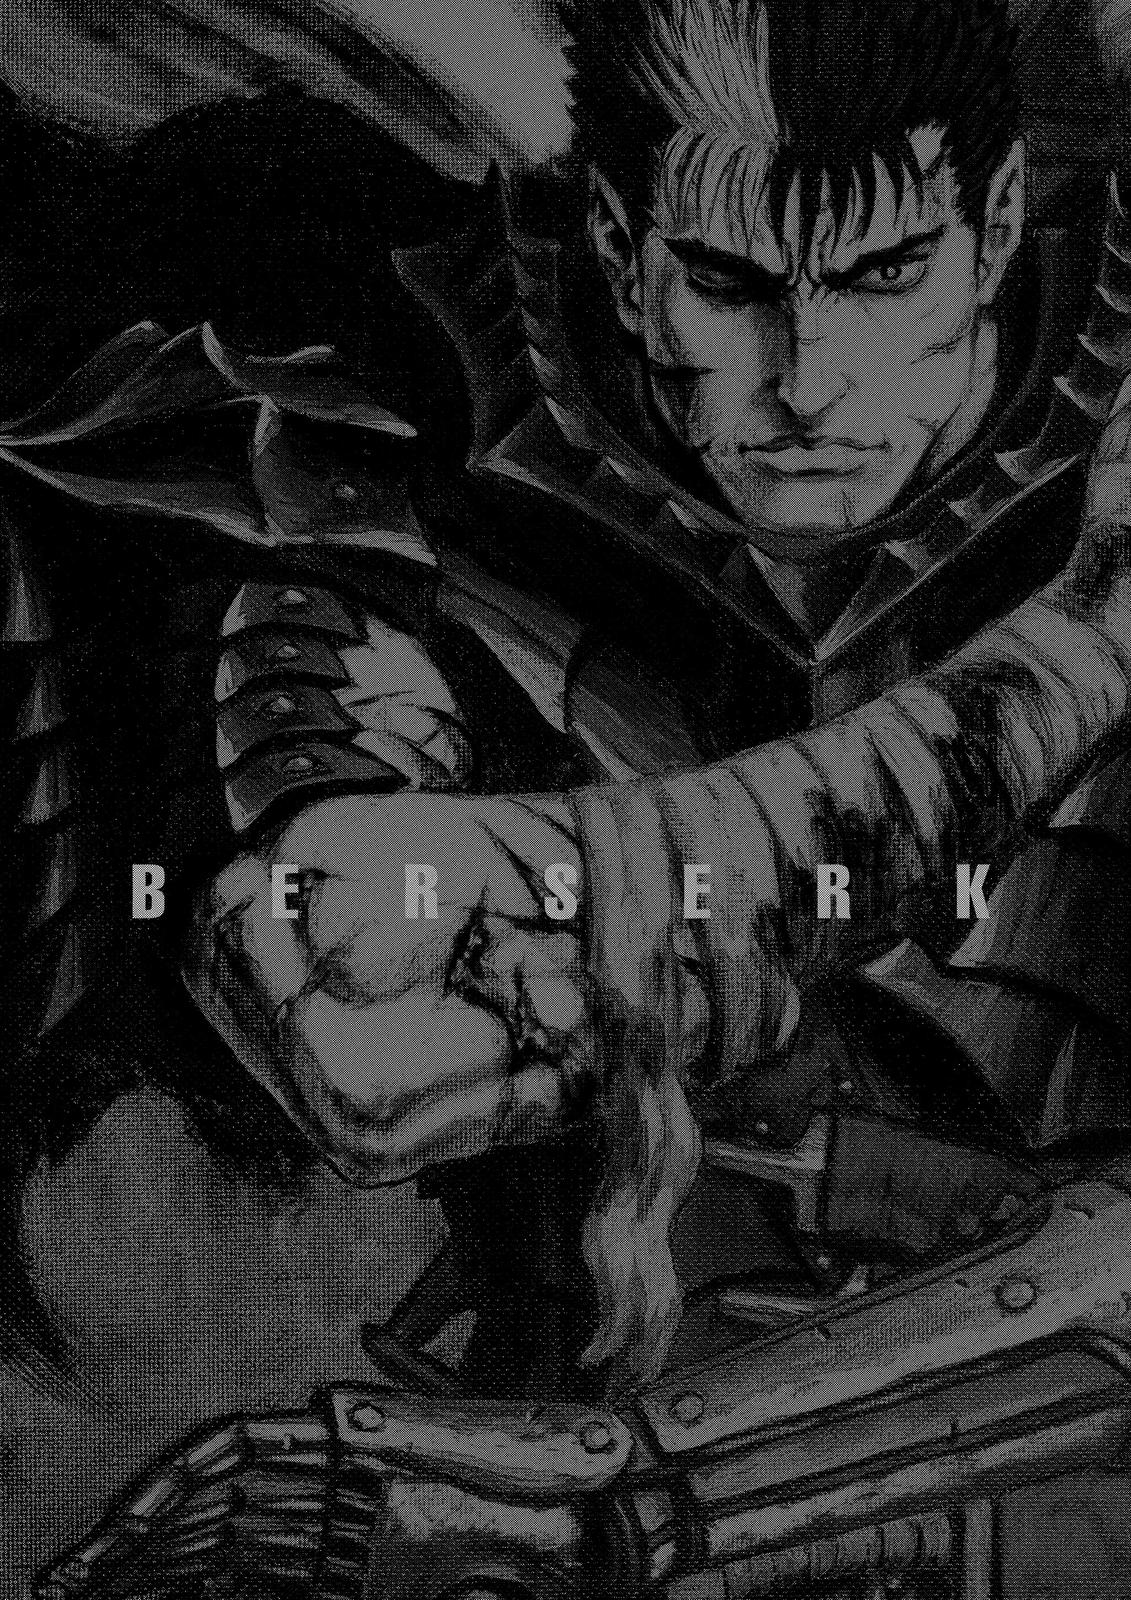 Berserk Manga Chapter 361 image 20